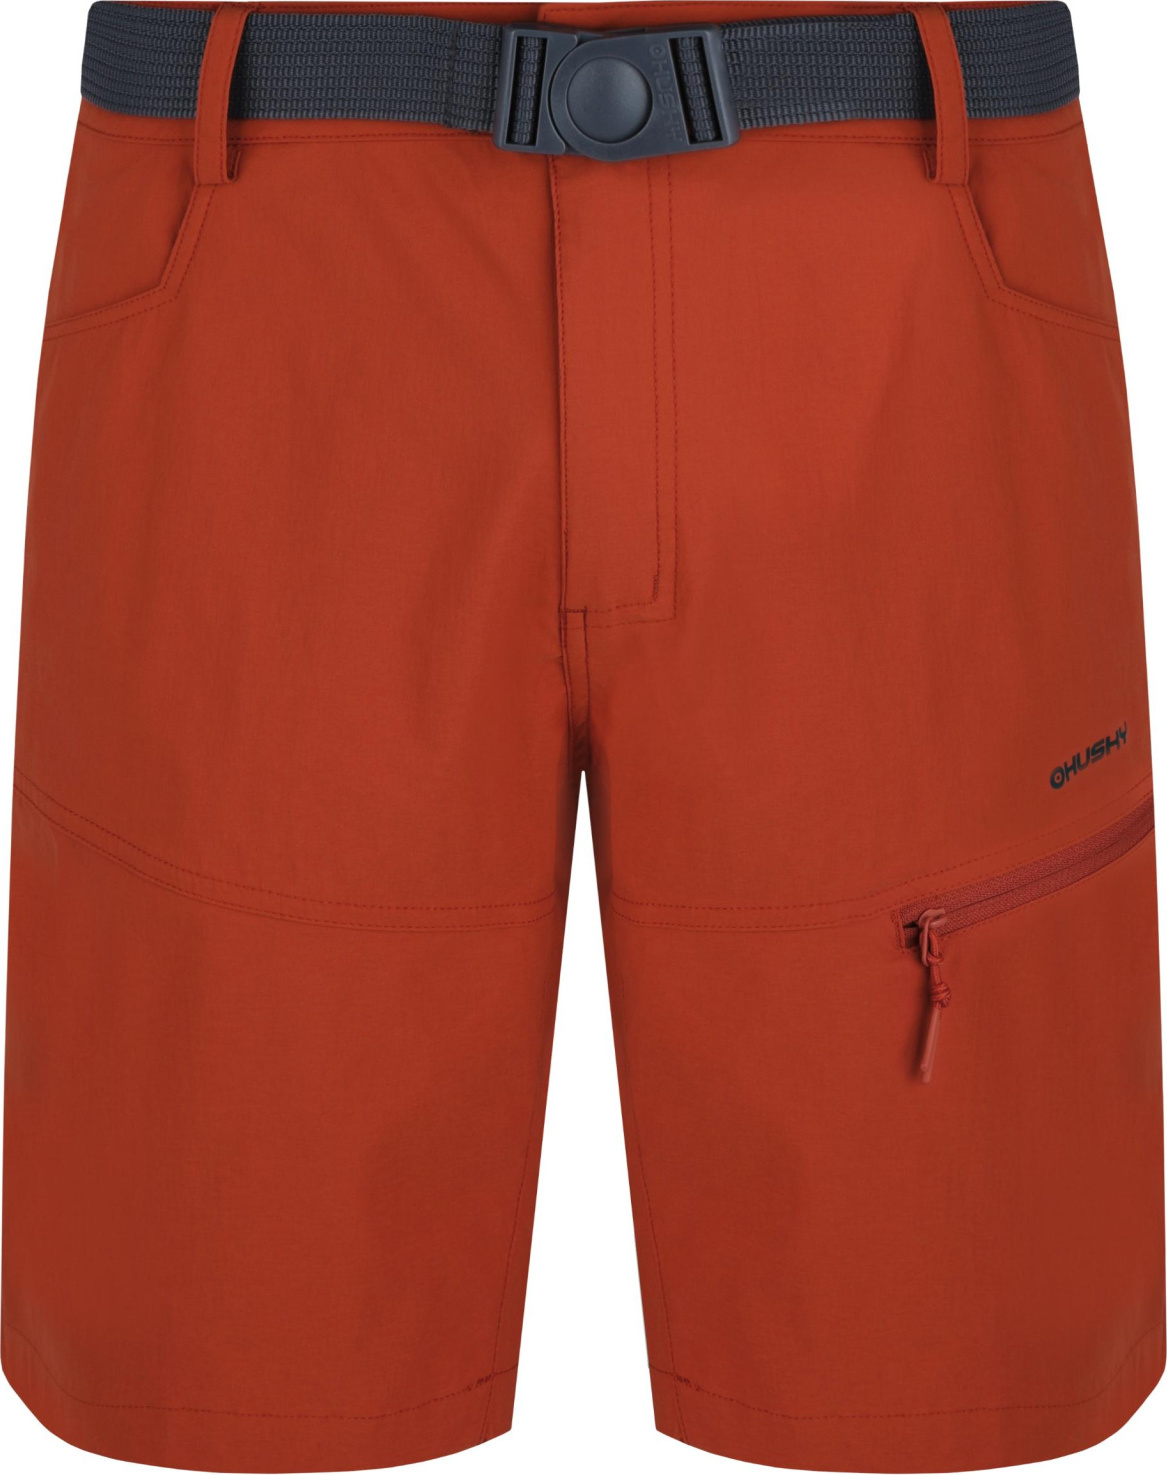 Pánské funkční šortky HUSKY Kimbi oranžové Velikost: M